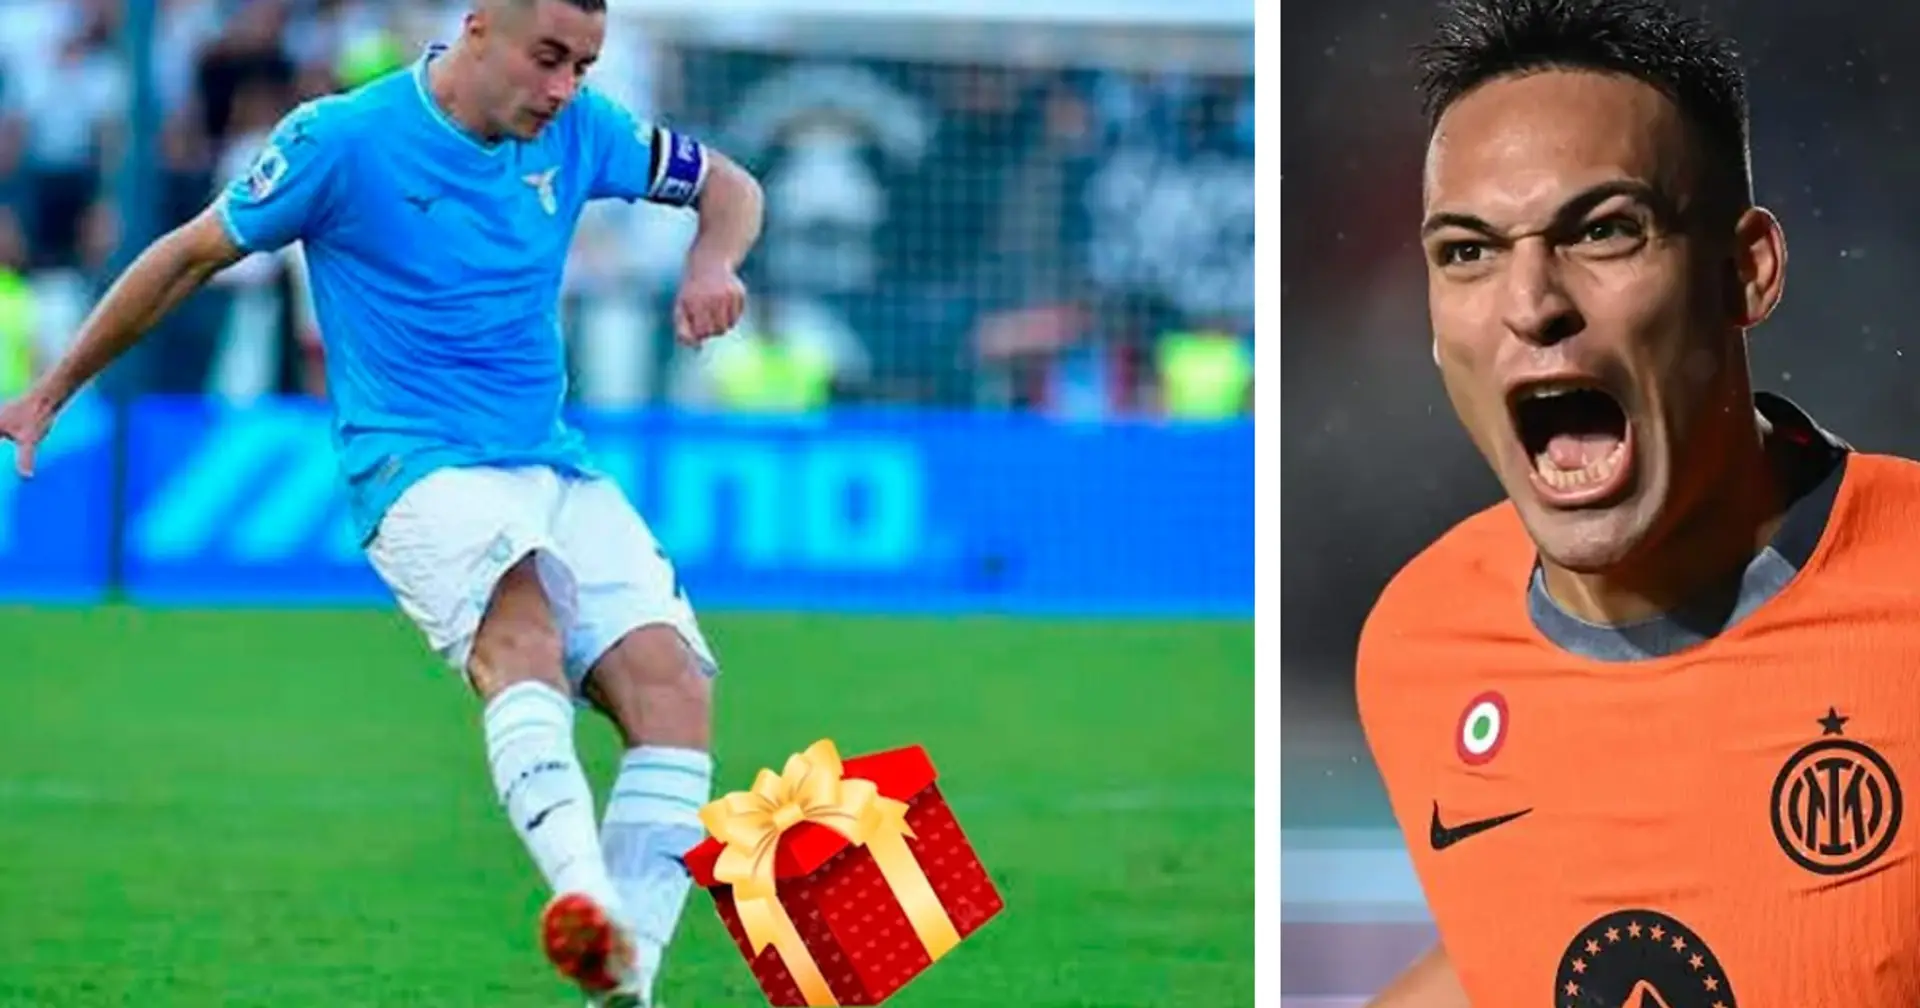 "Babbo Natale in anticipo per l'Inter": Tuttosport evidenzia il regalo di Marusic che affonda la Lazio